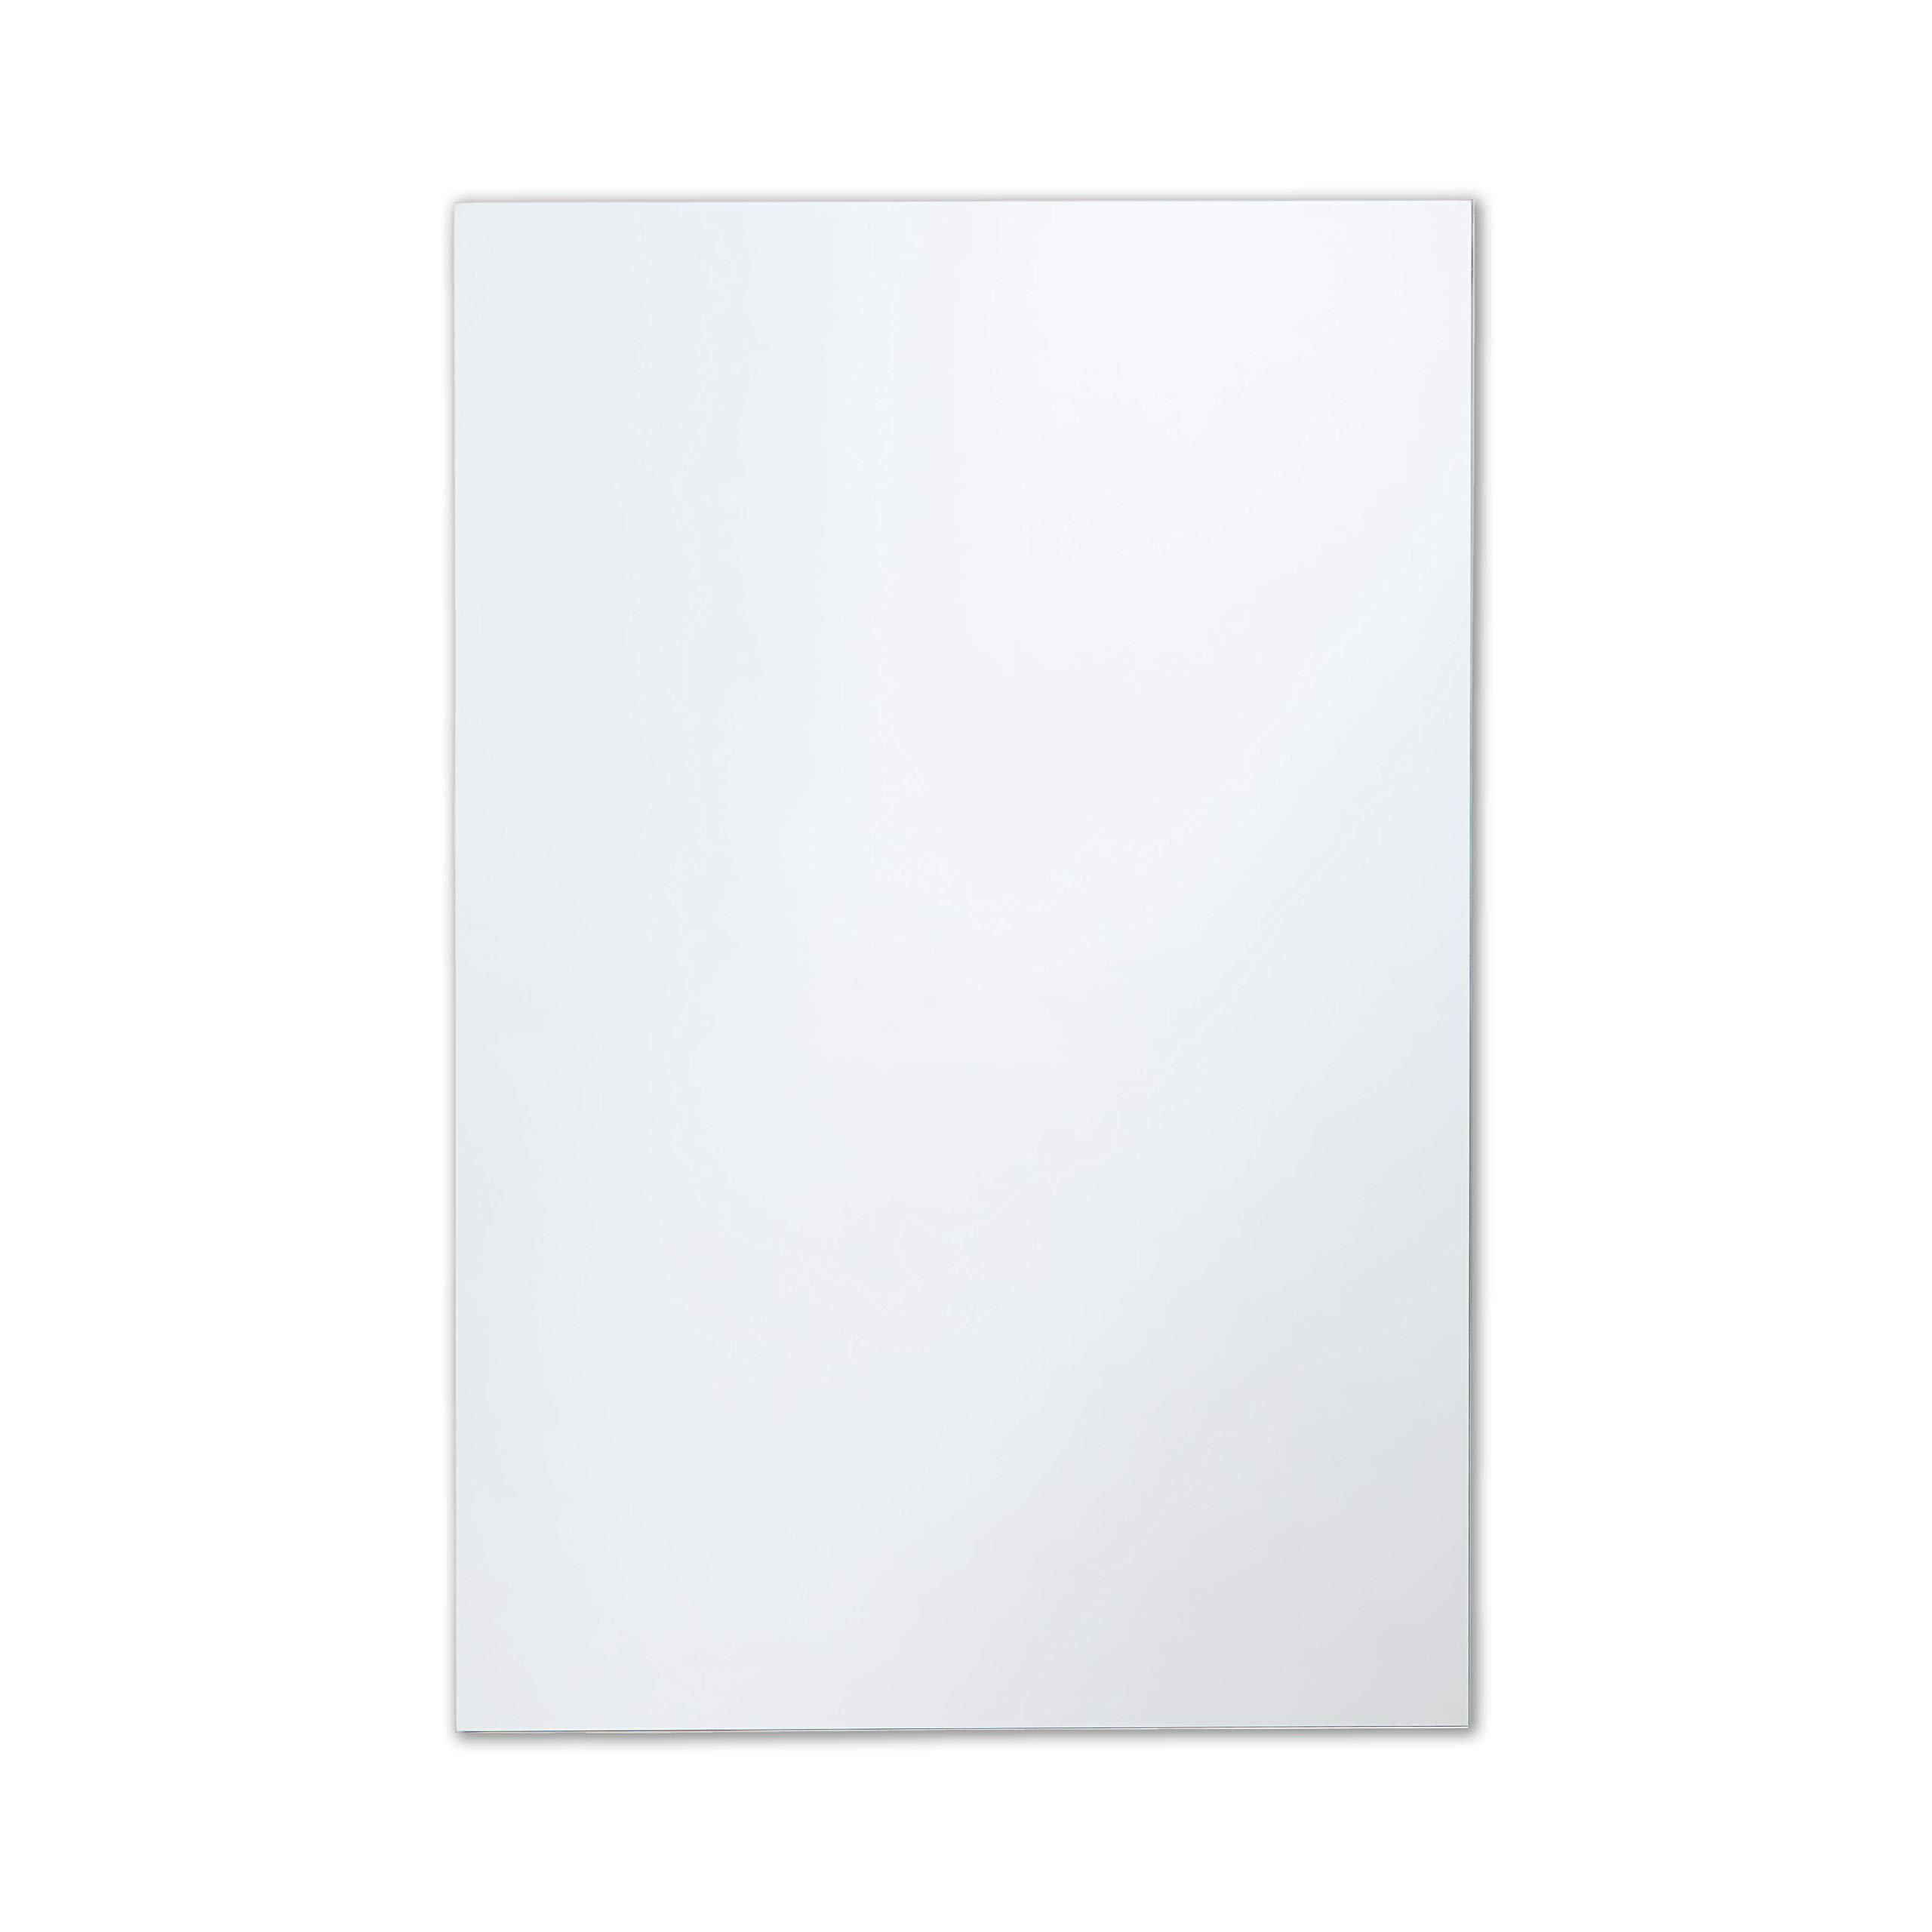 The Better Bevel better bevel 20" x 30" frameless rectangle bathroom wall mirror | polished edge